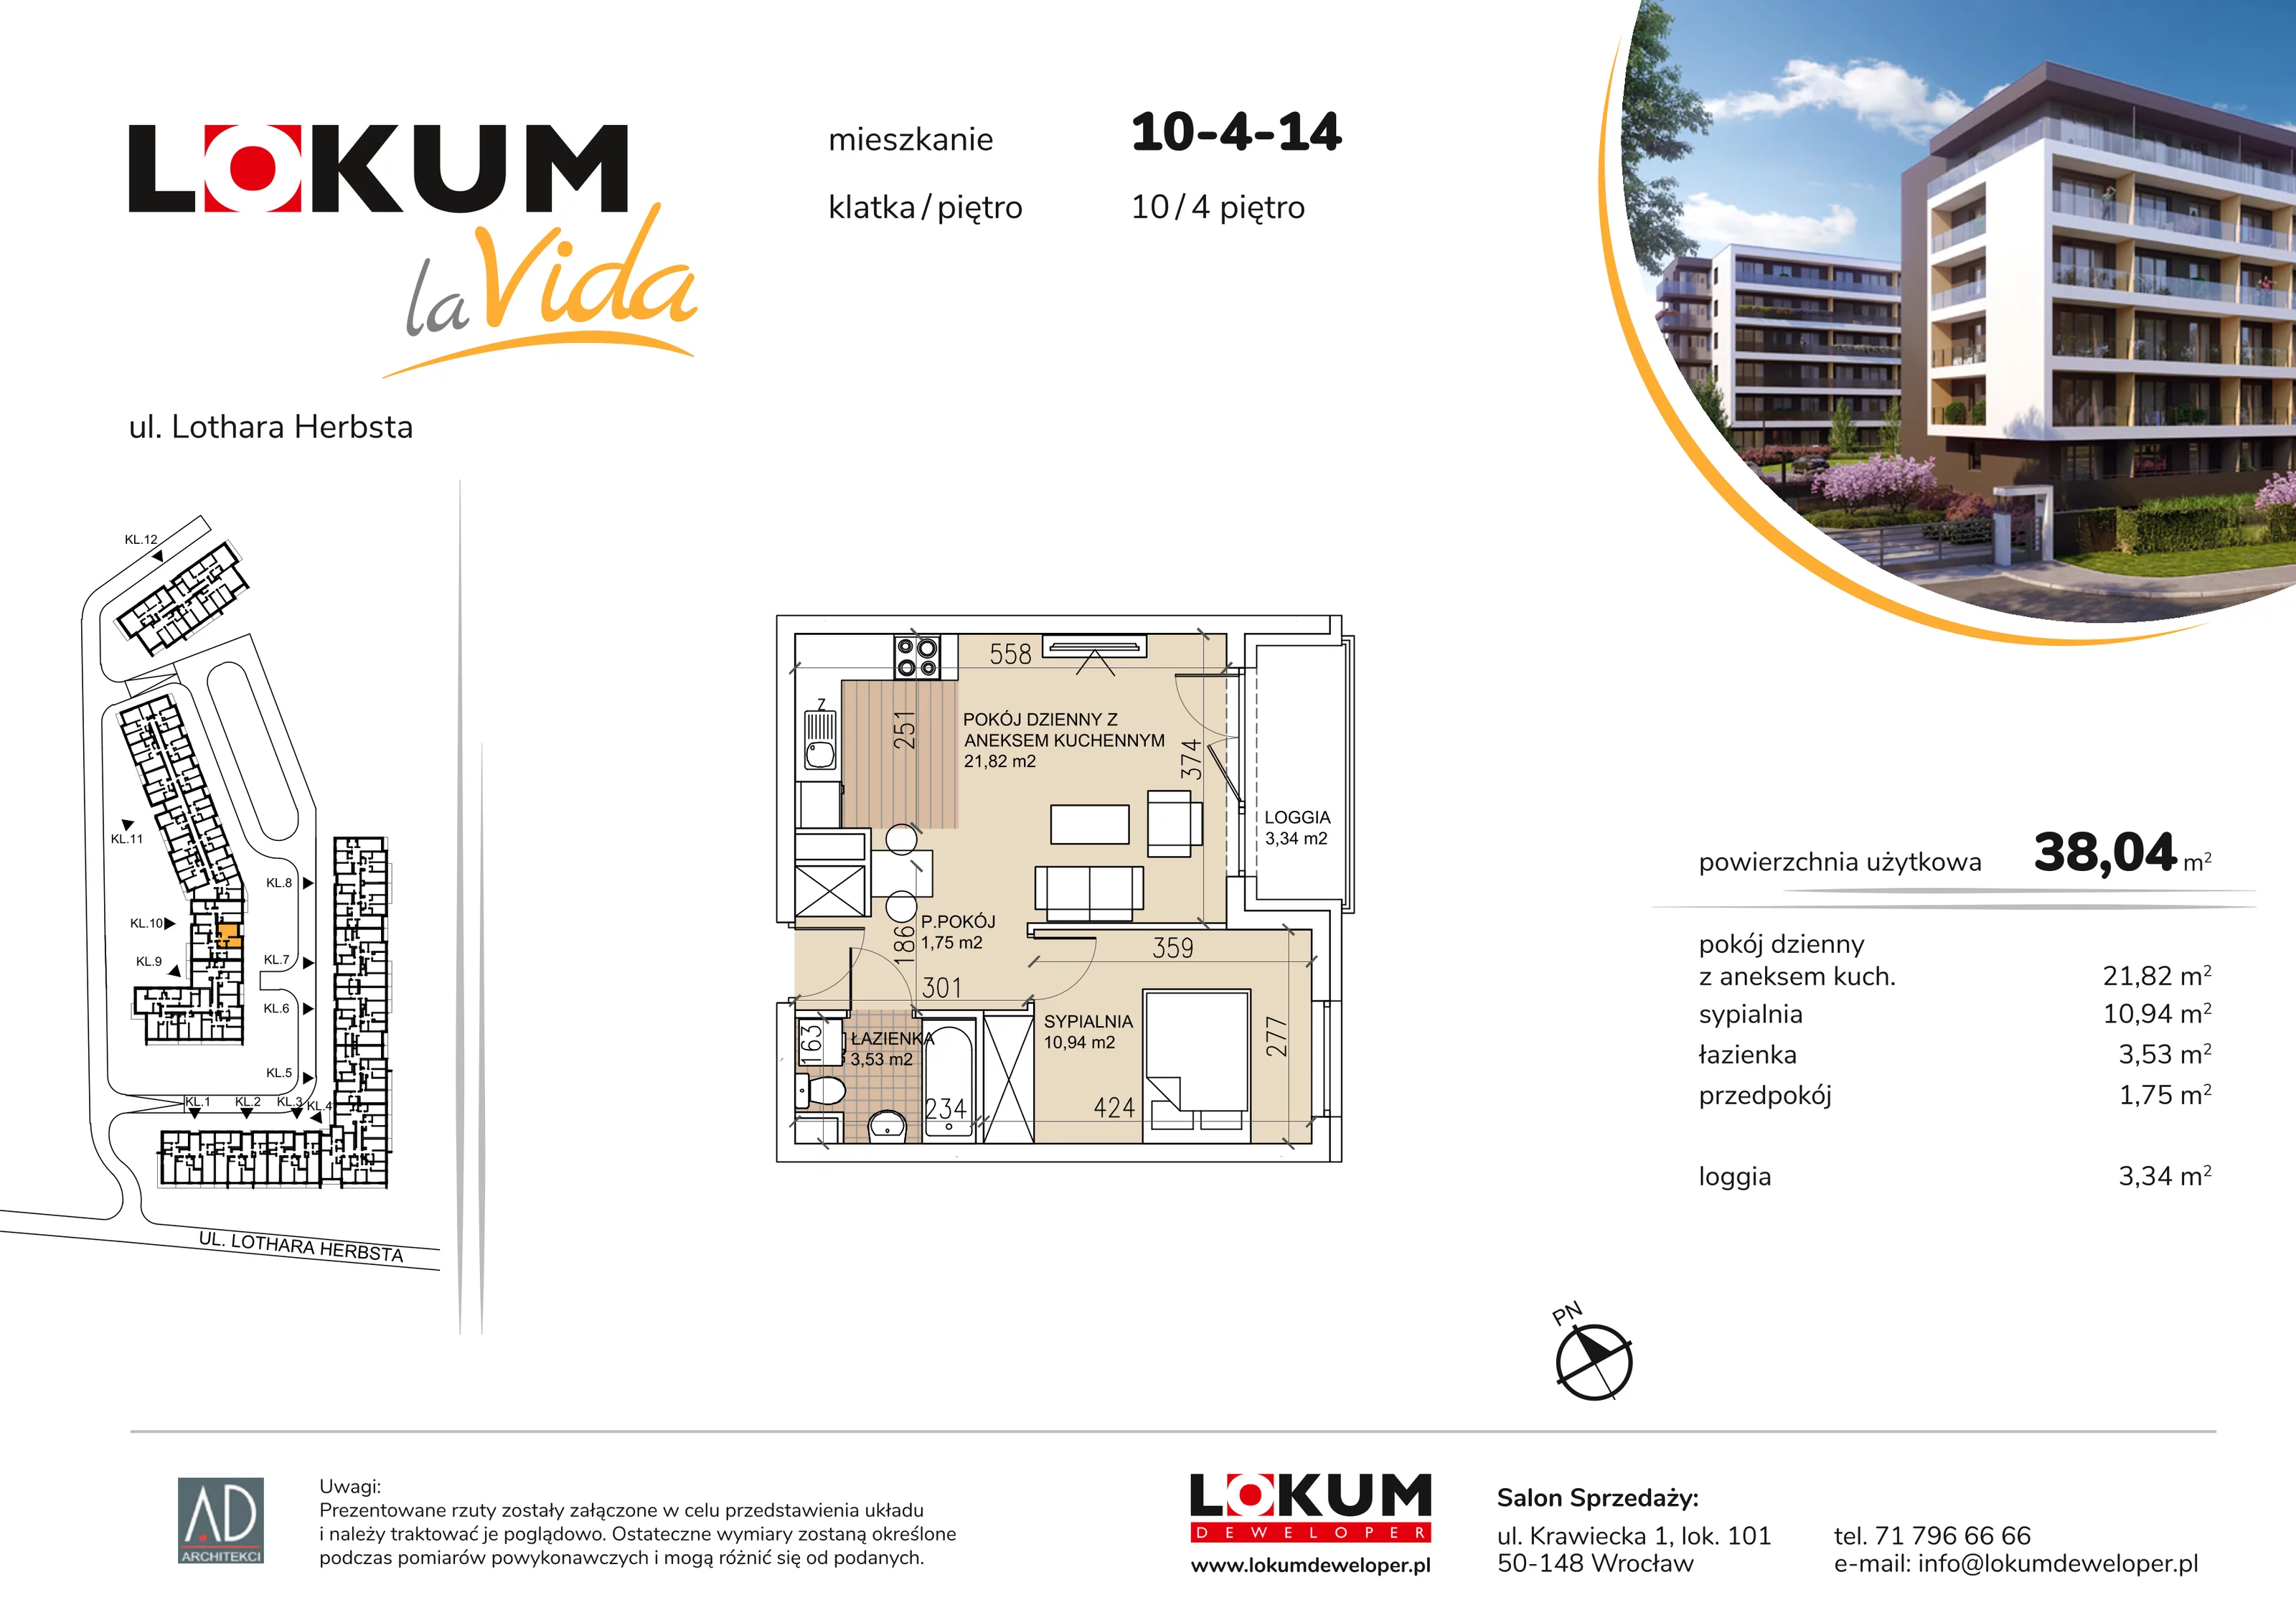 Mieszkanie 38,04 m², piętro 4, oferta nr 10-4-14, Lokum la Vida, Wrocław, Sołtysowice, ul. Lothara Herbsta